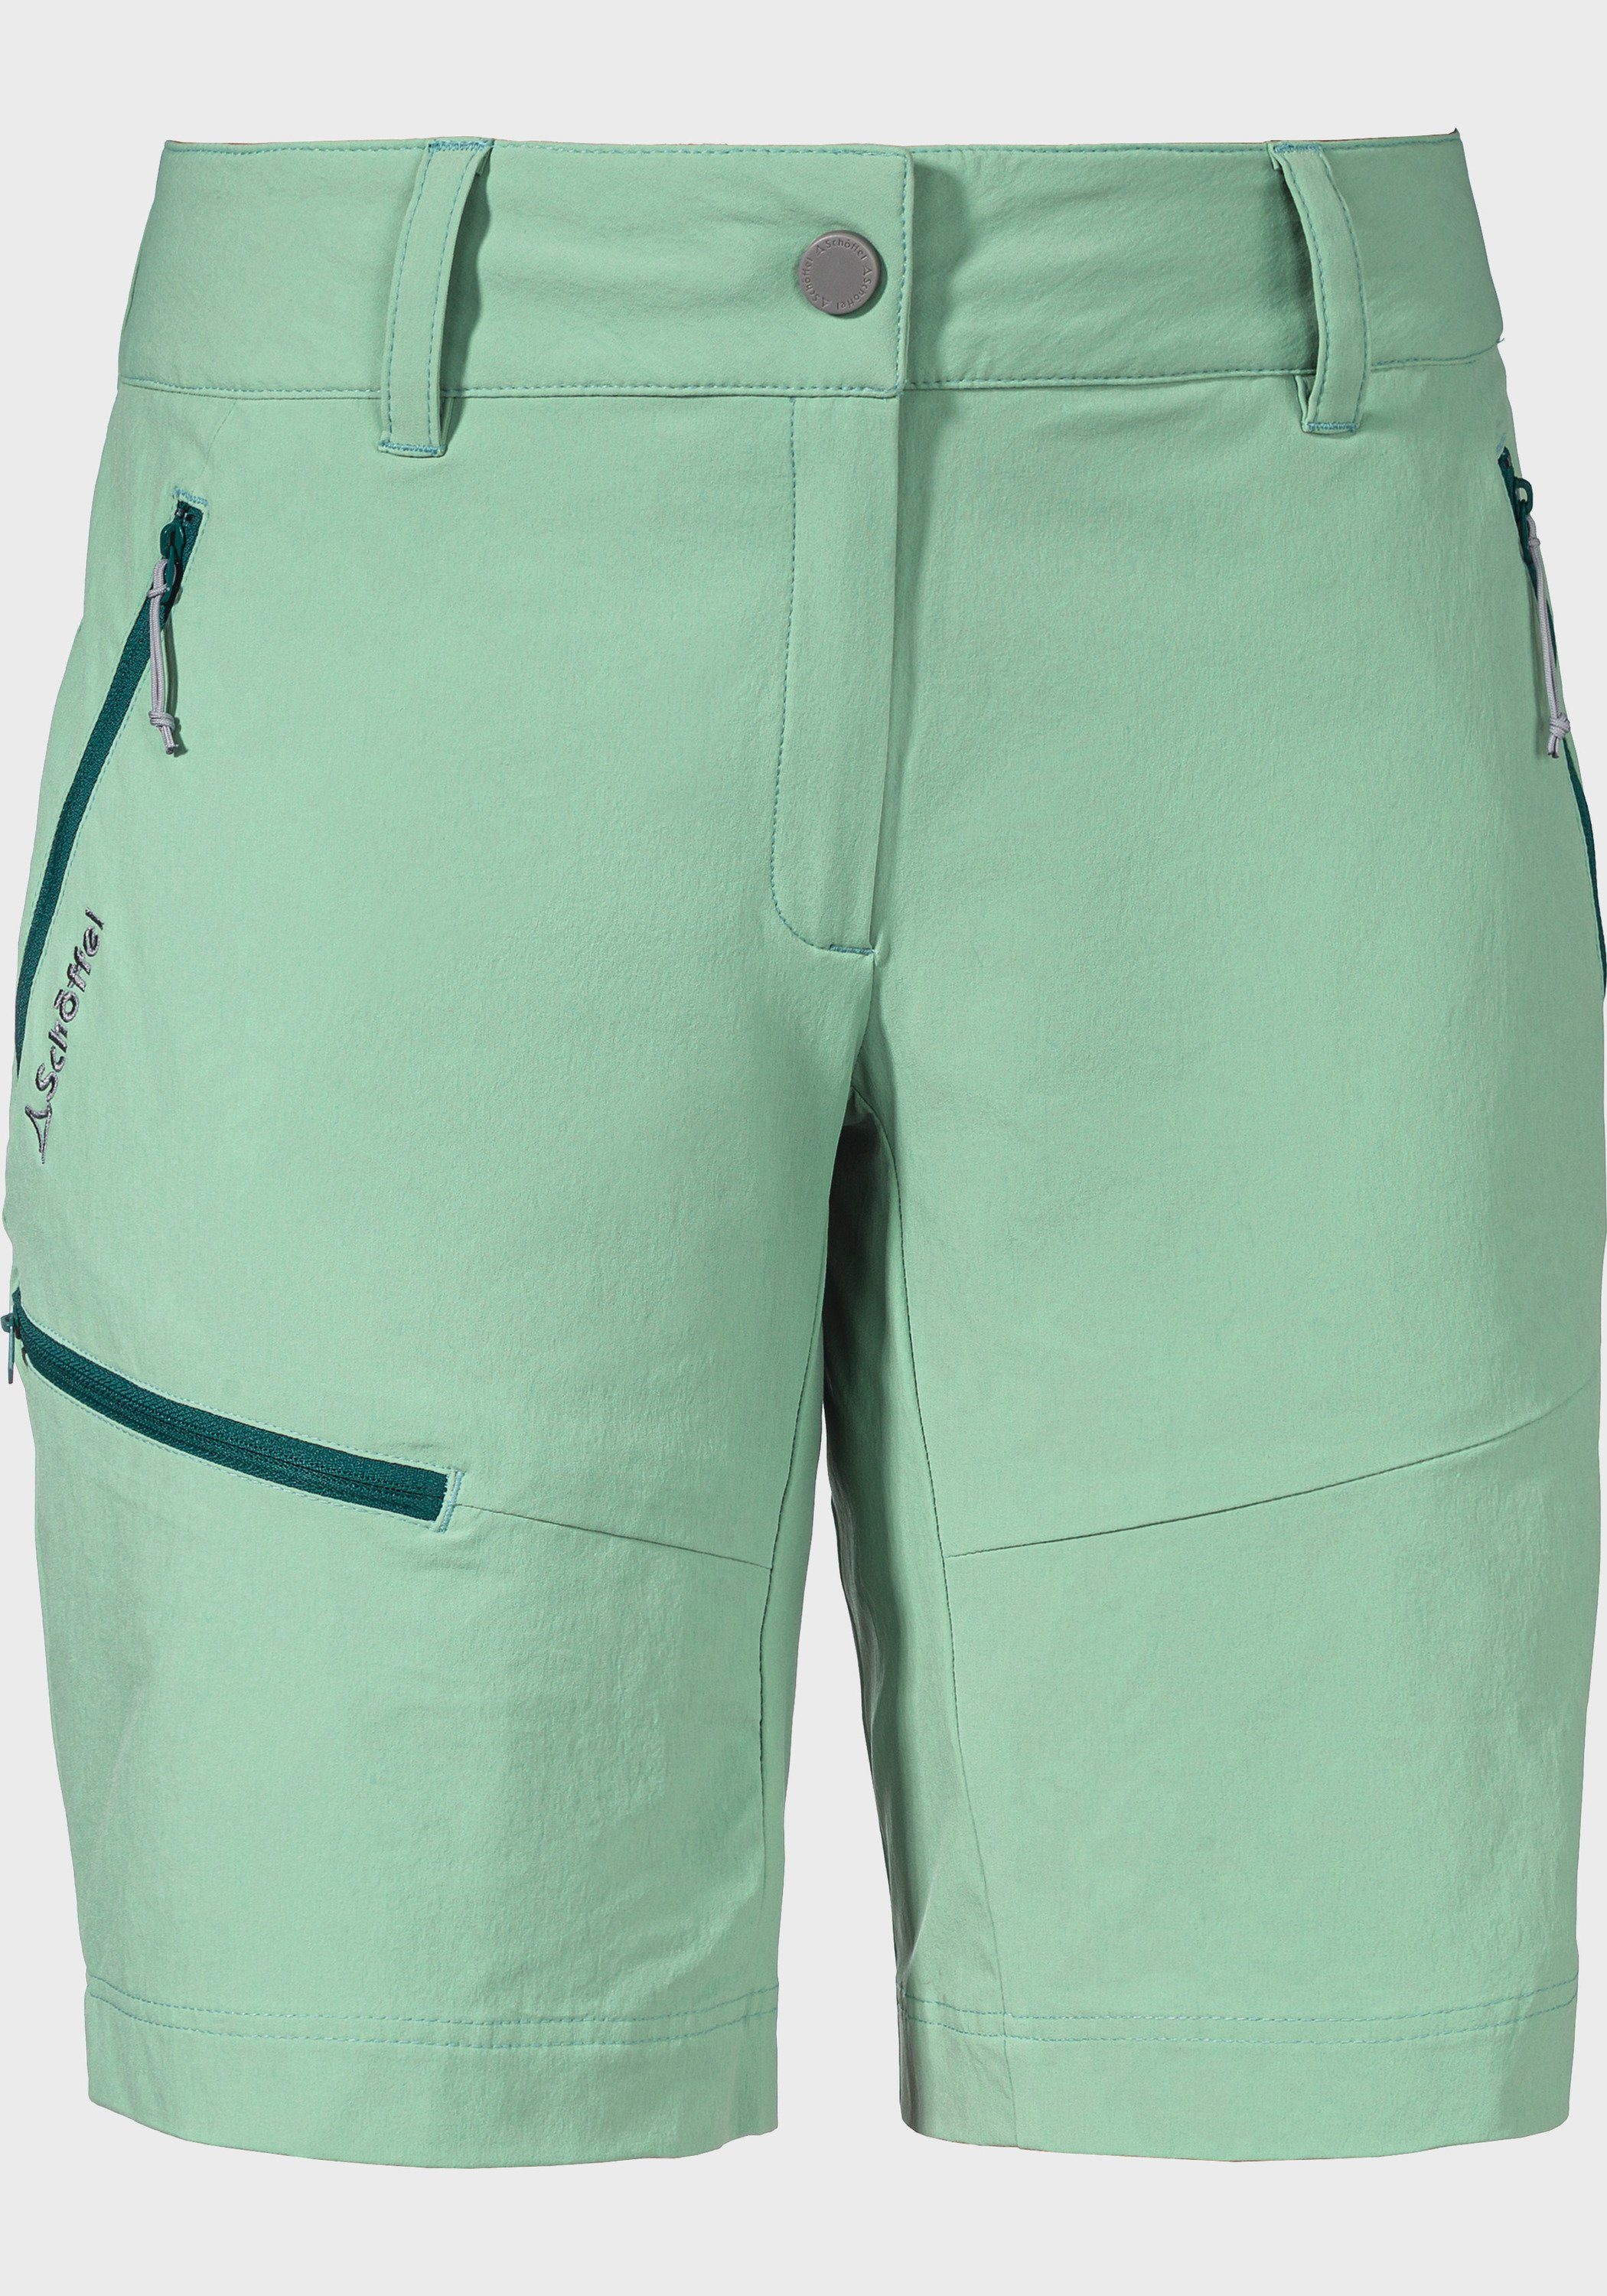 Grüne Shorts für Damen online kaufen | OTTO